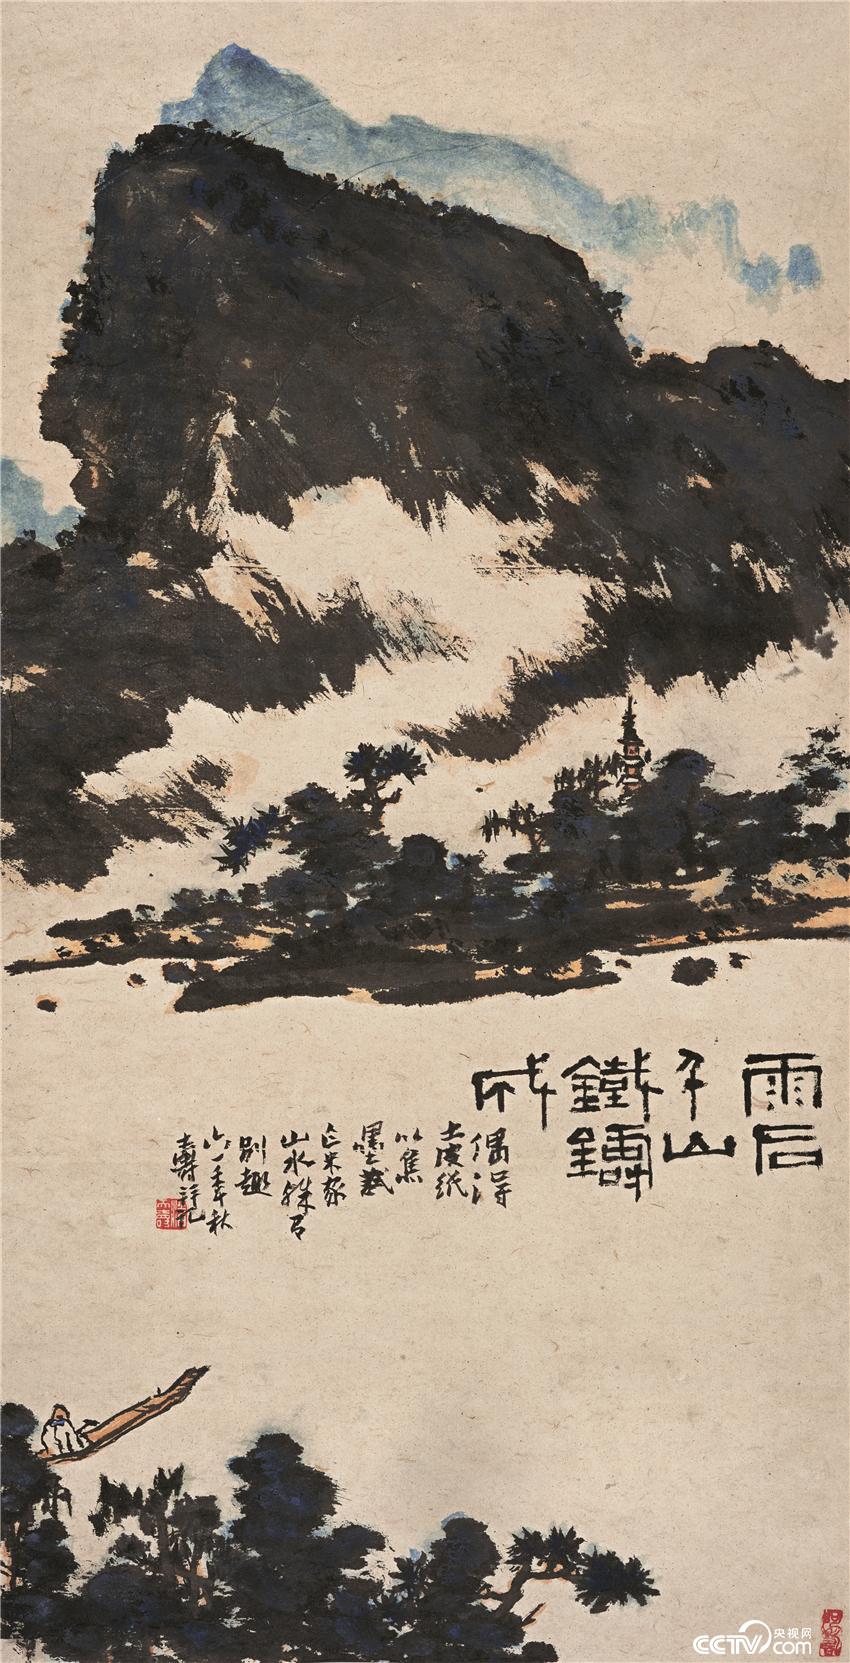 雨後千山鐵鑄成圖  潘天壽 中國畫 89.9×45.9cm 1961年 